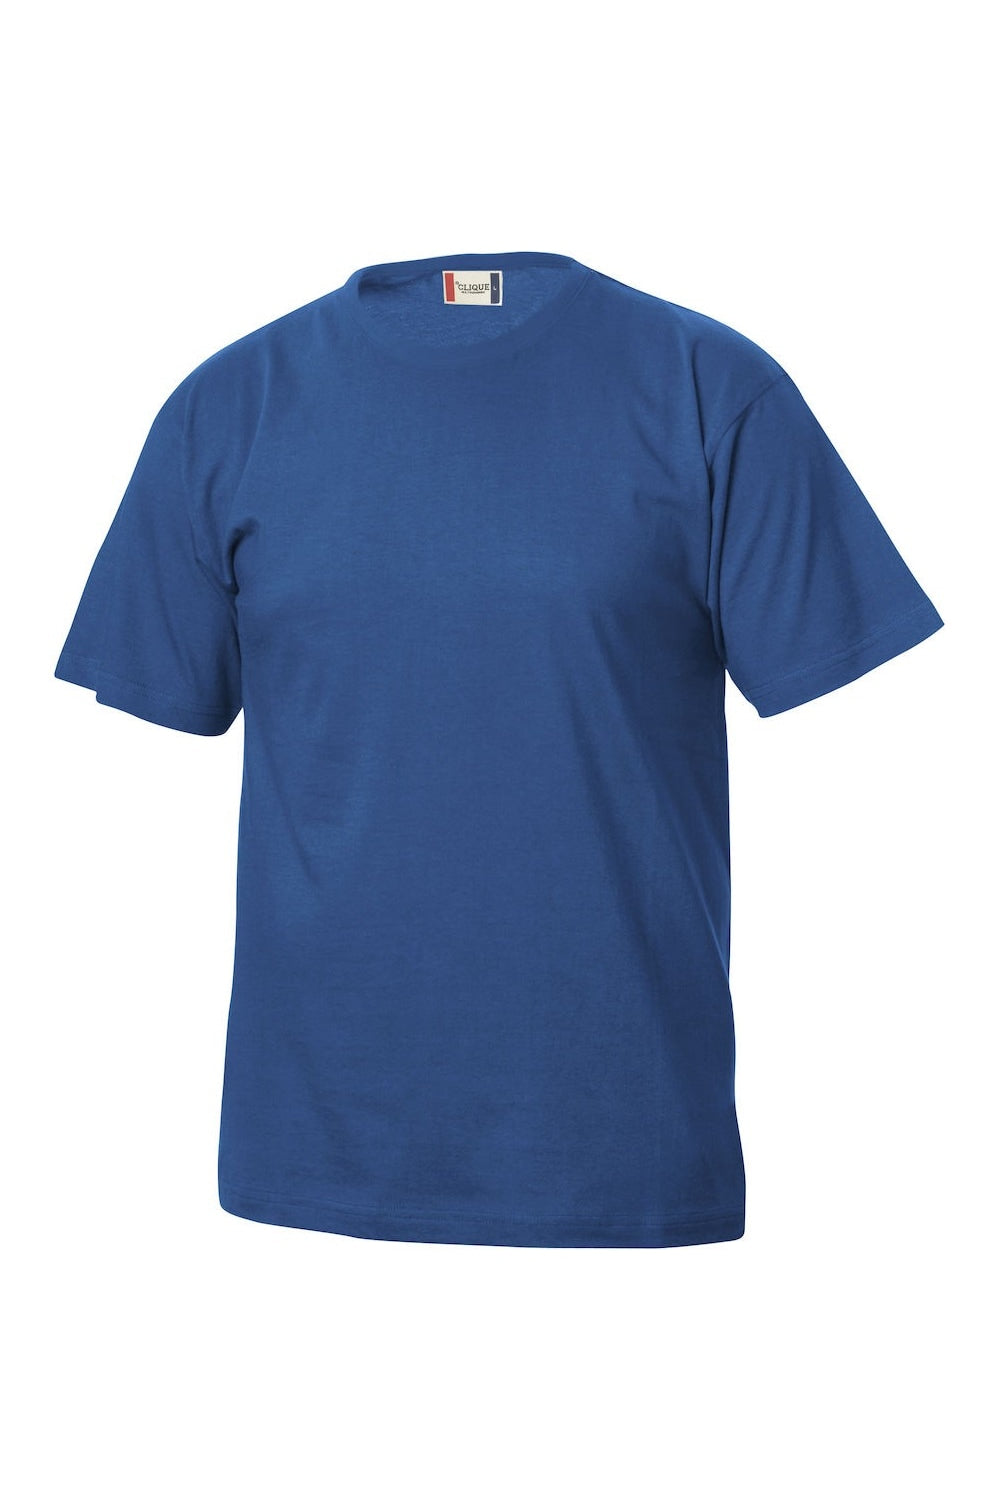 Childrens/Kids Basic T-Shirt - Royal Blue